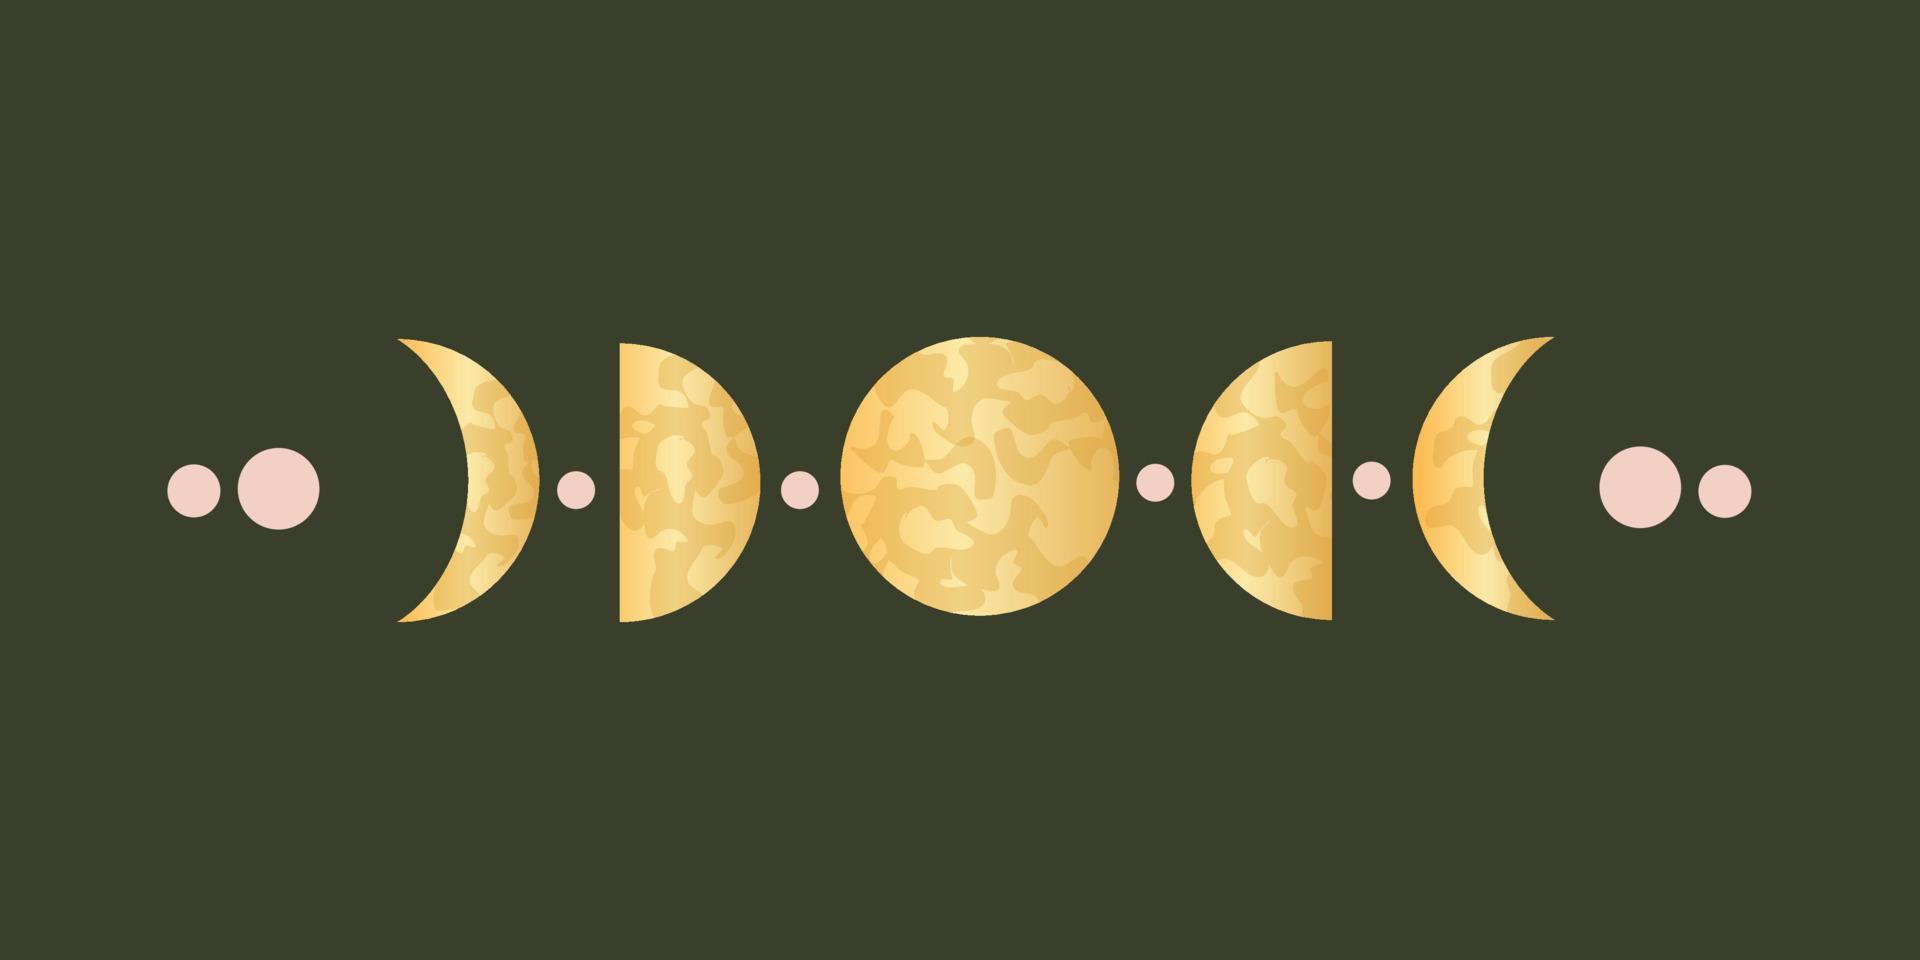 fasi lunari per l'astrologia sacra pagana. ciclo celeste completo di lune con decorazioni. illustrazione vettoriale